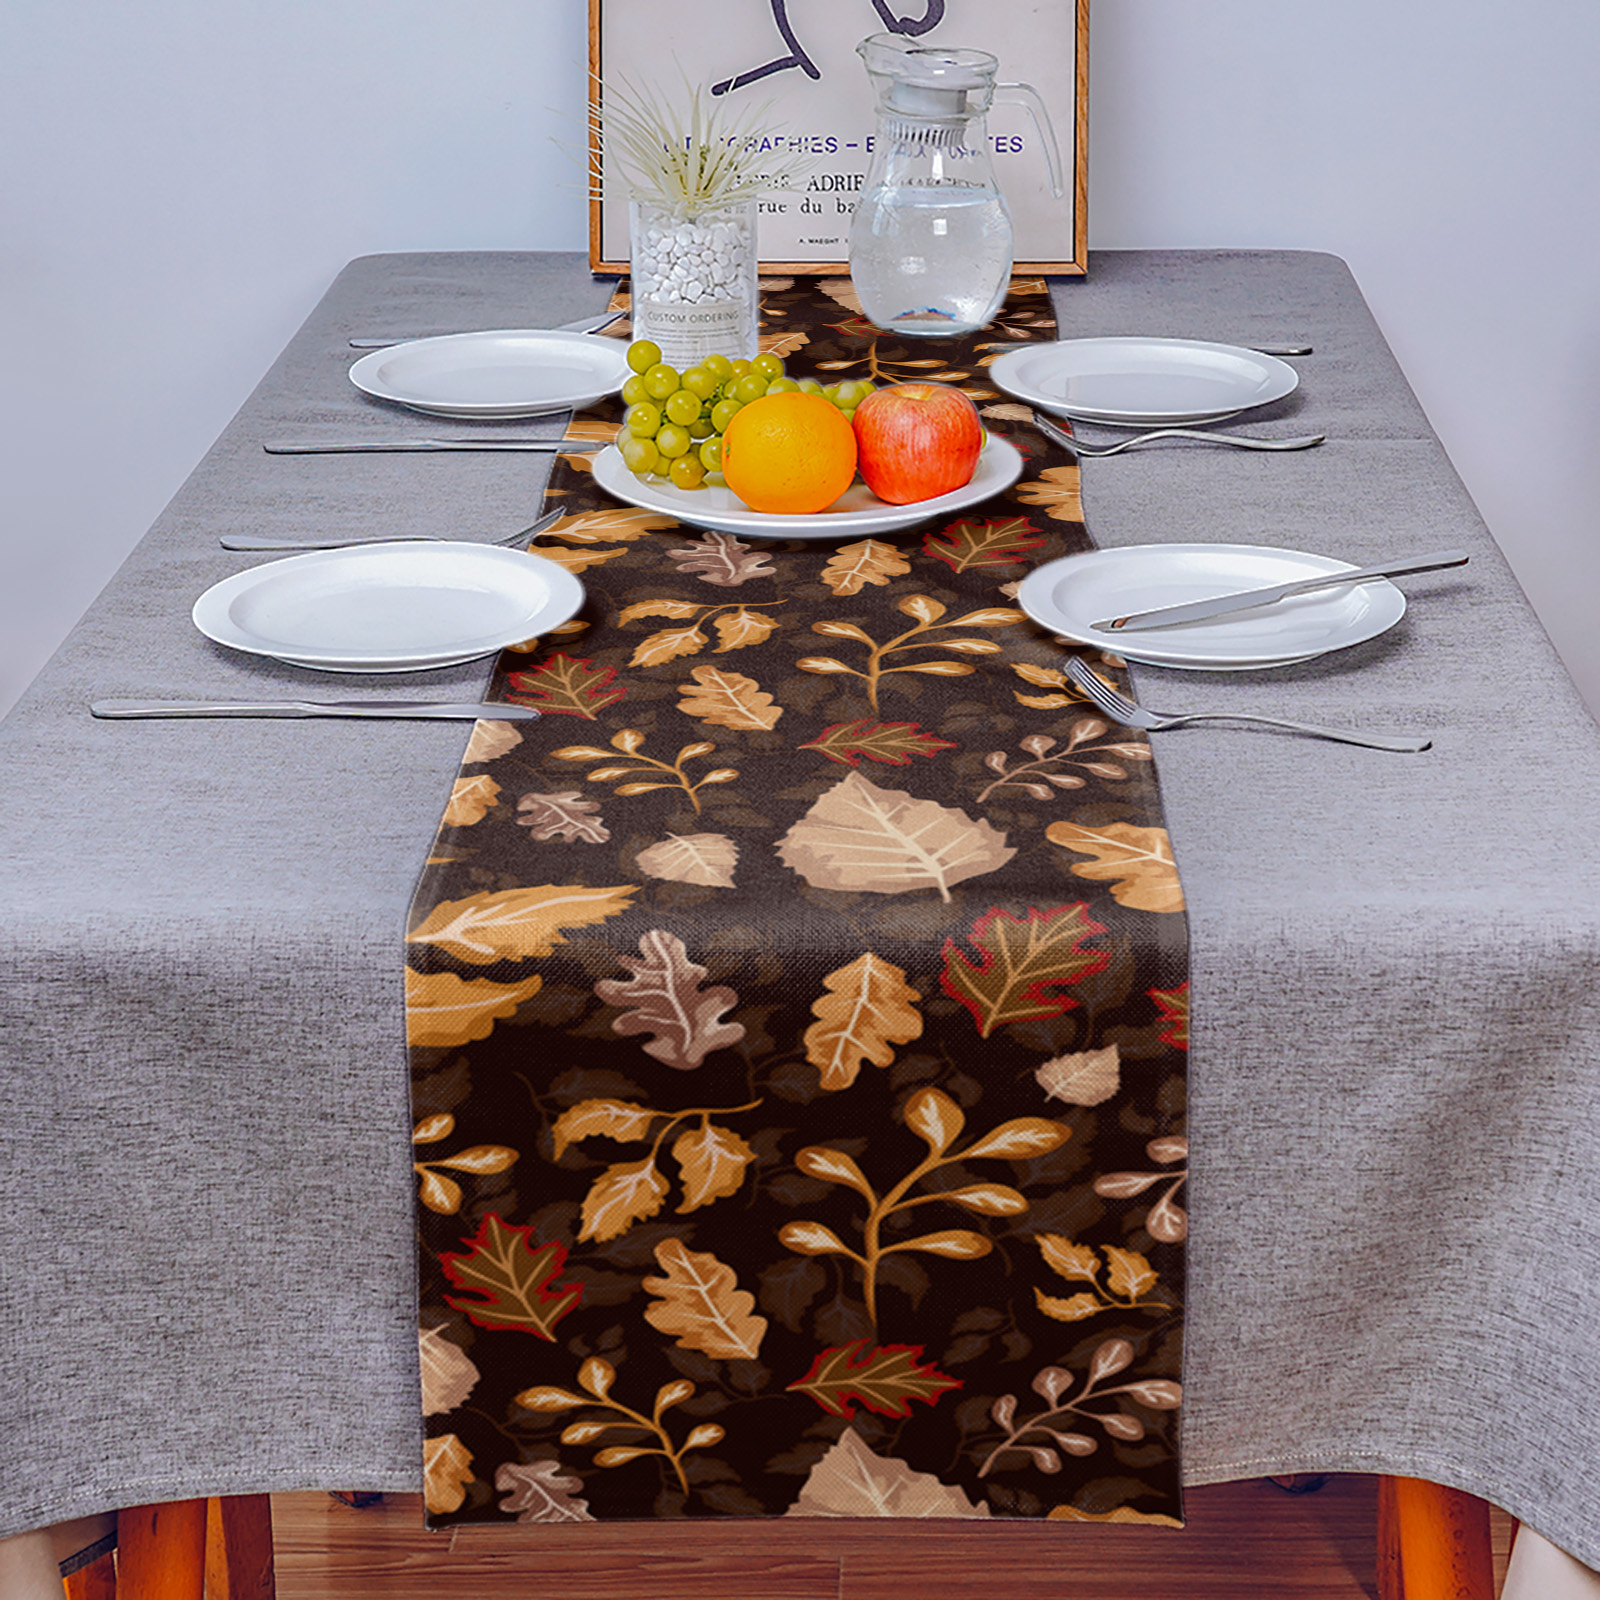 秋の農家レトロメープルリーフテクスチャテーブルランナーダイニングテーブルウェディングパーティークリスマスケーキフローラルテーブルクロスデコレーション